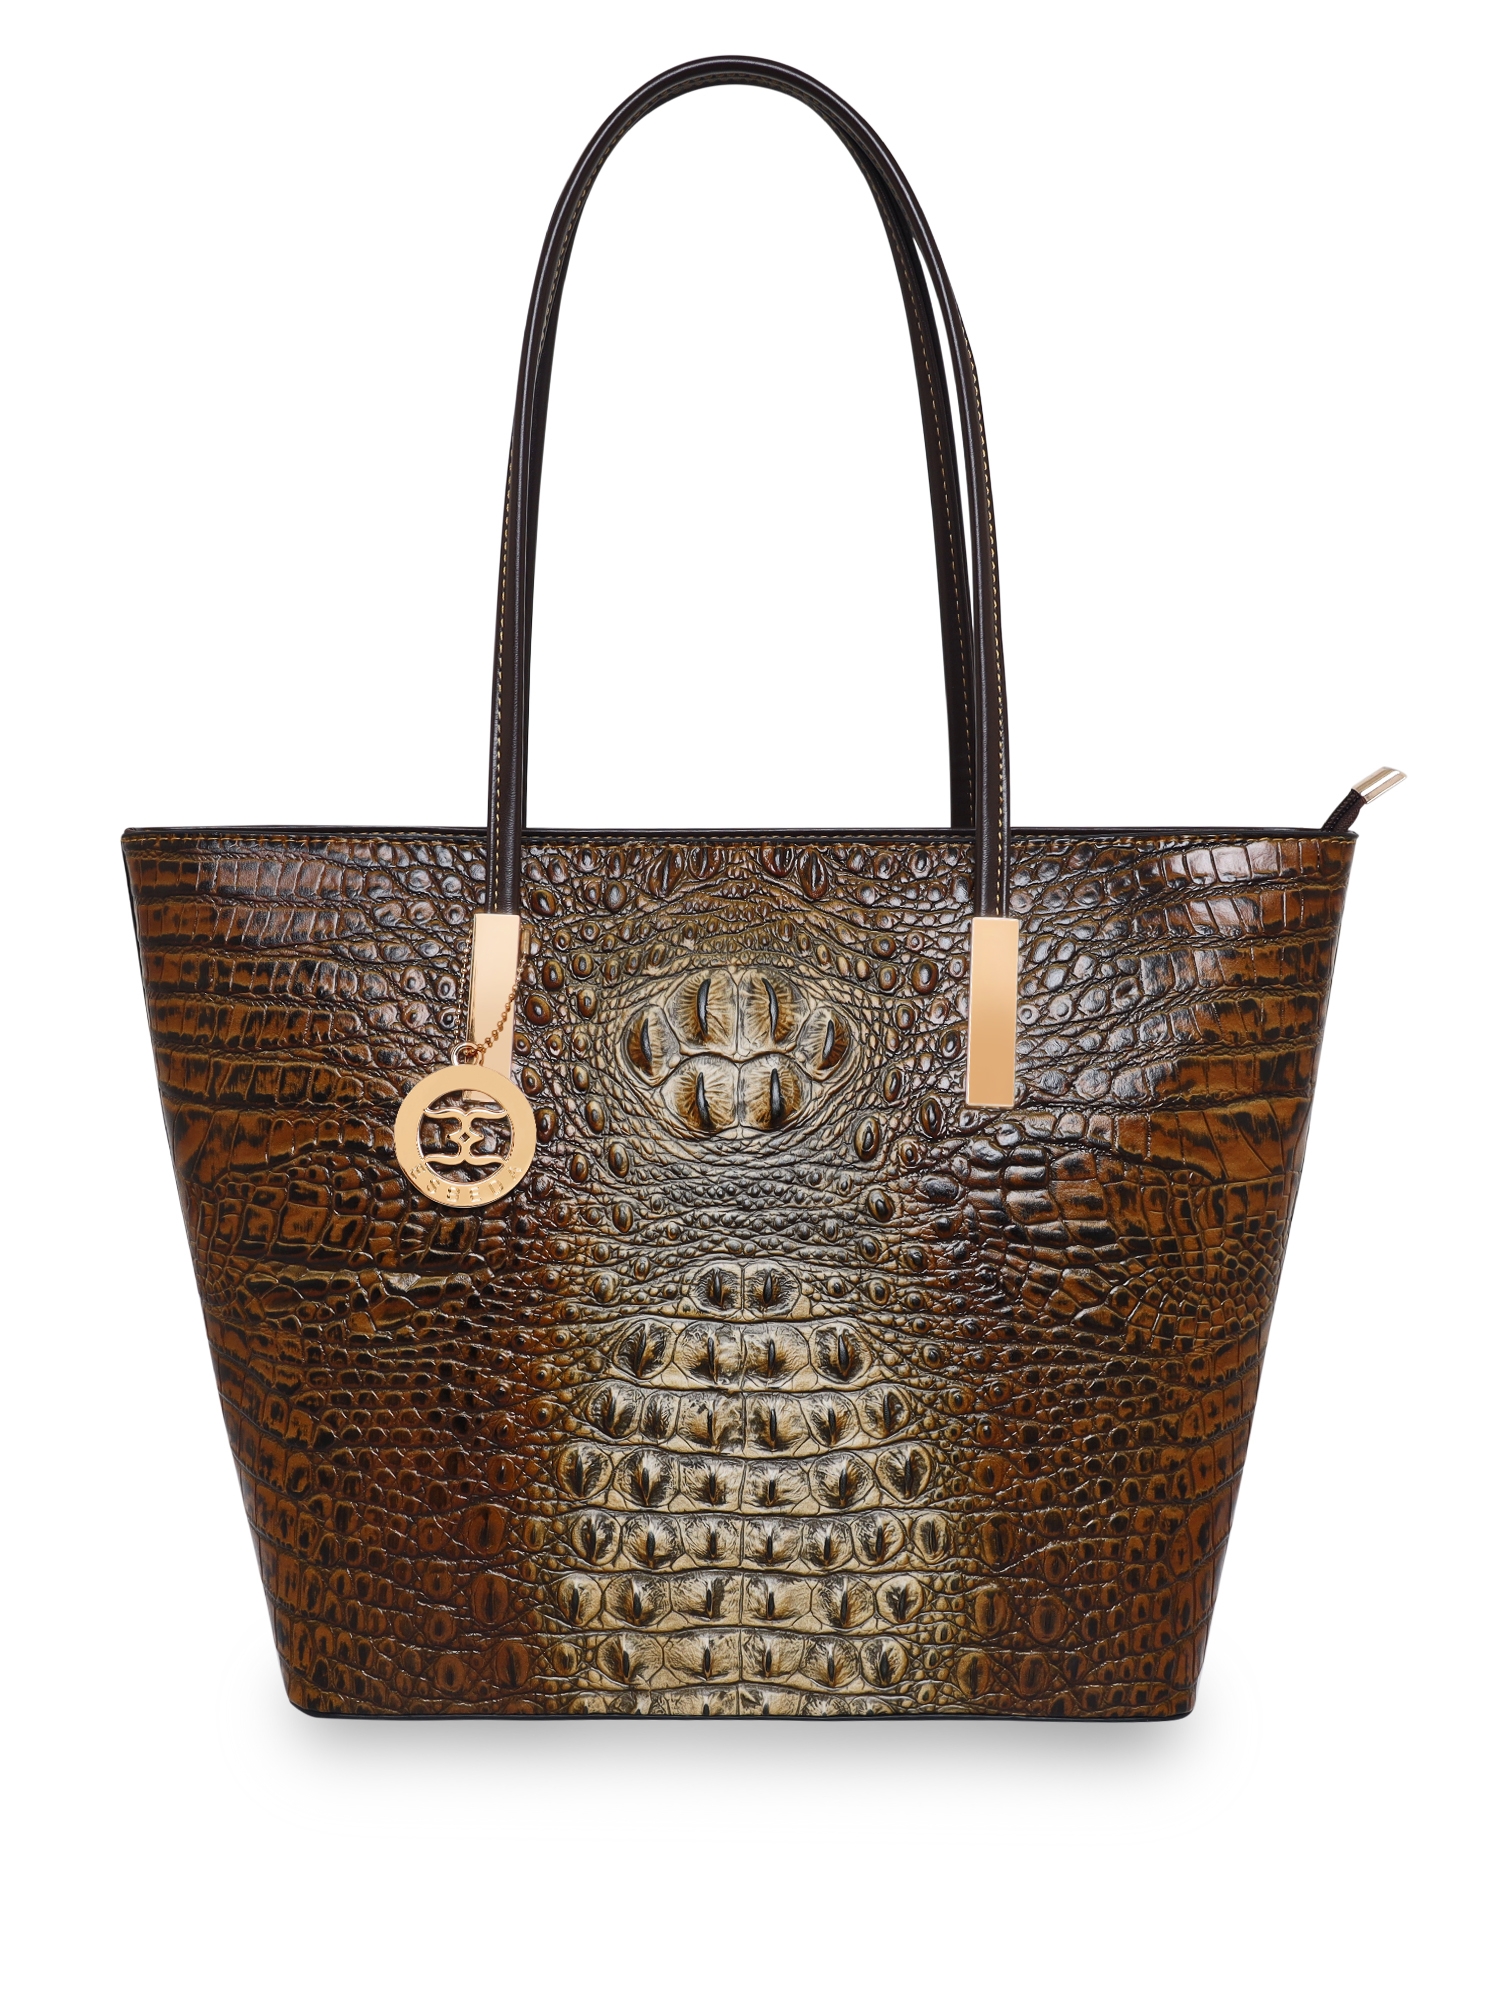 ESBEDA Camel Color Crocodile Pattern Printed Handbag For Women